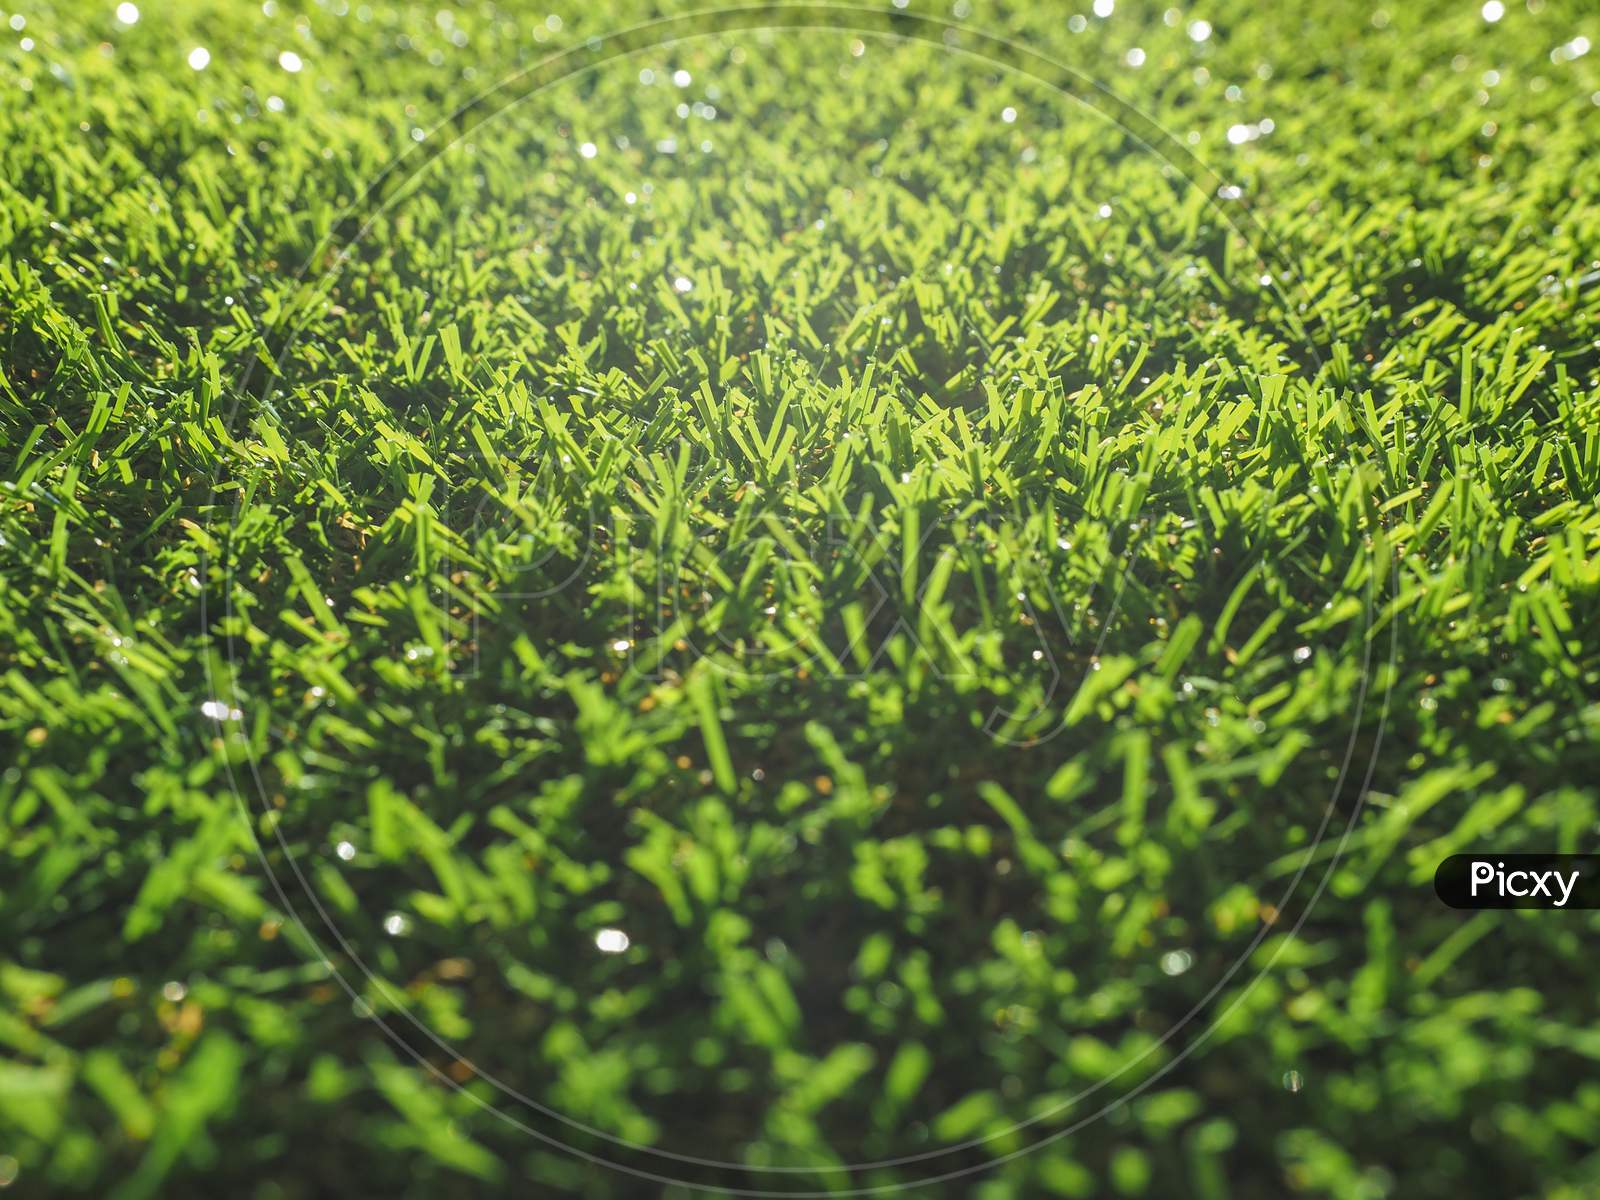 Artificial Grass Texture